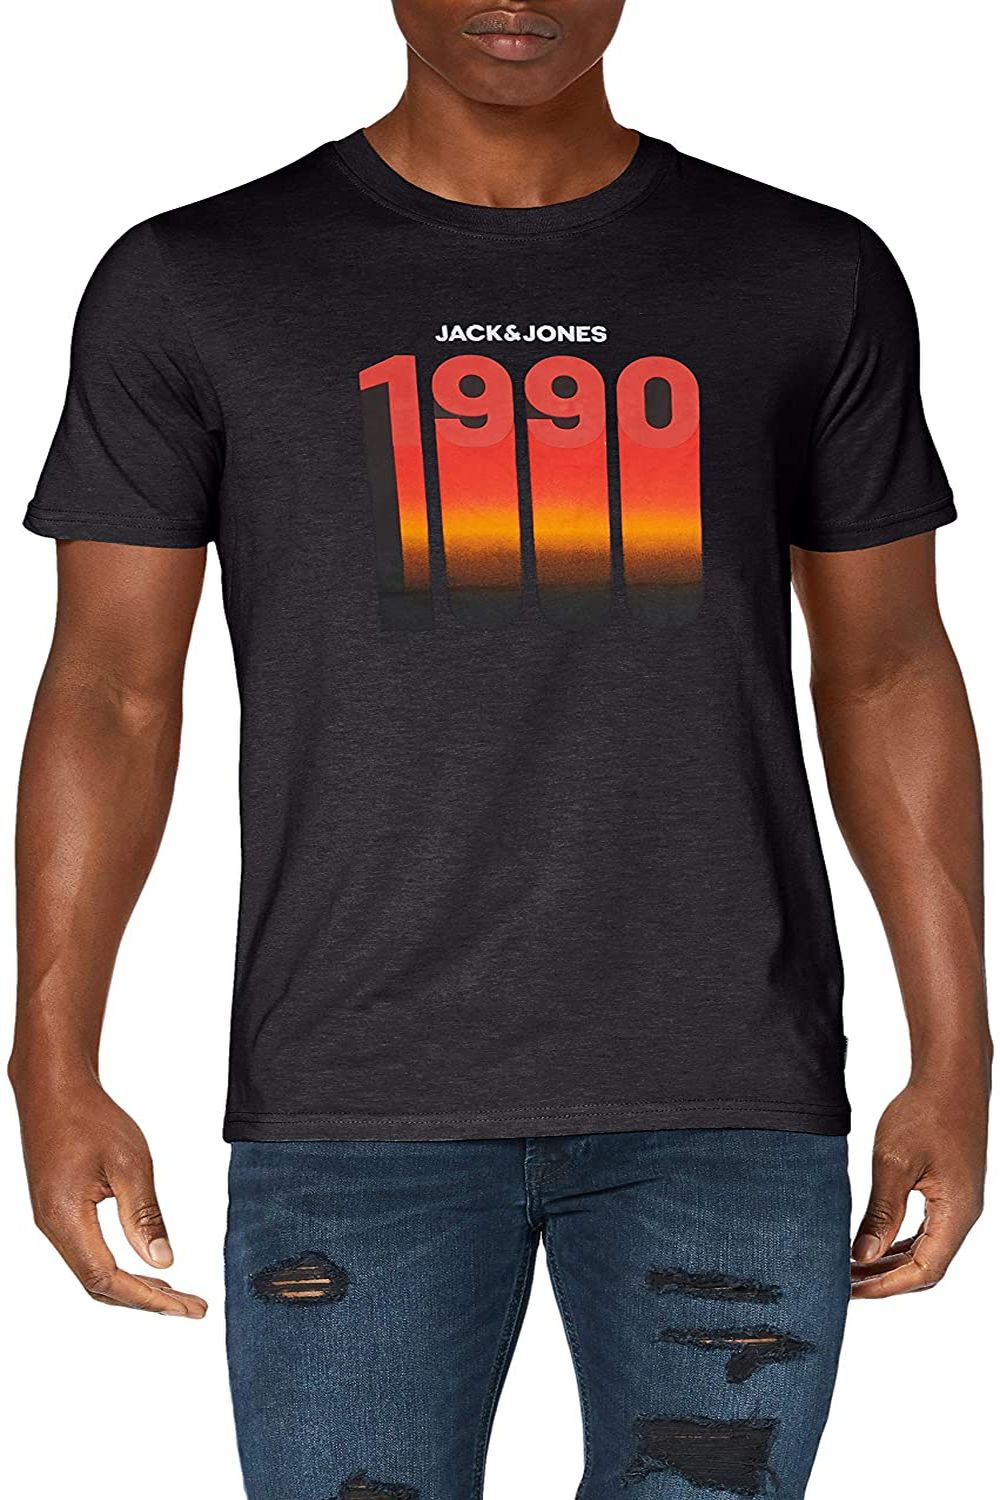 Tricou Jack & Jones cu imprimeu 1990, Negru, Marimea M